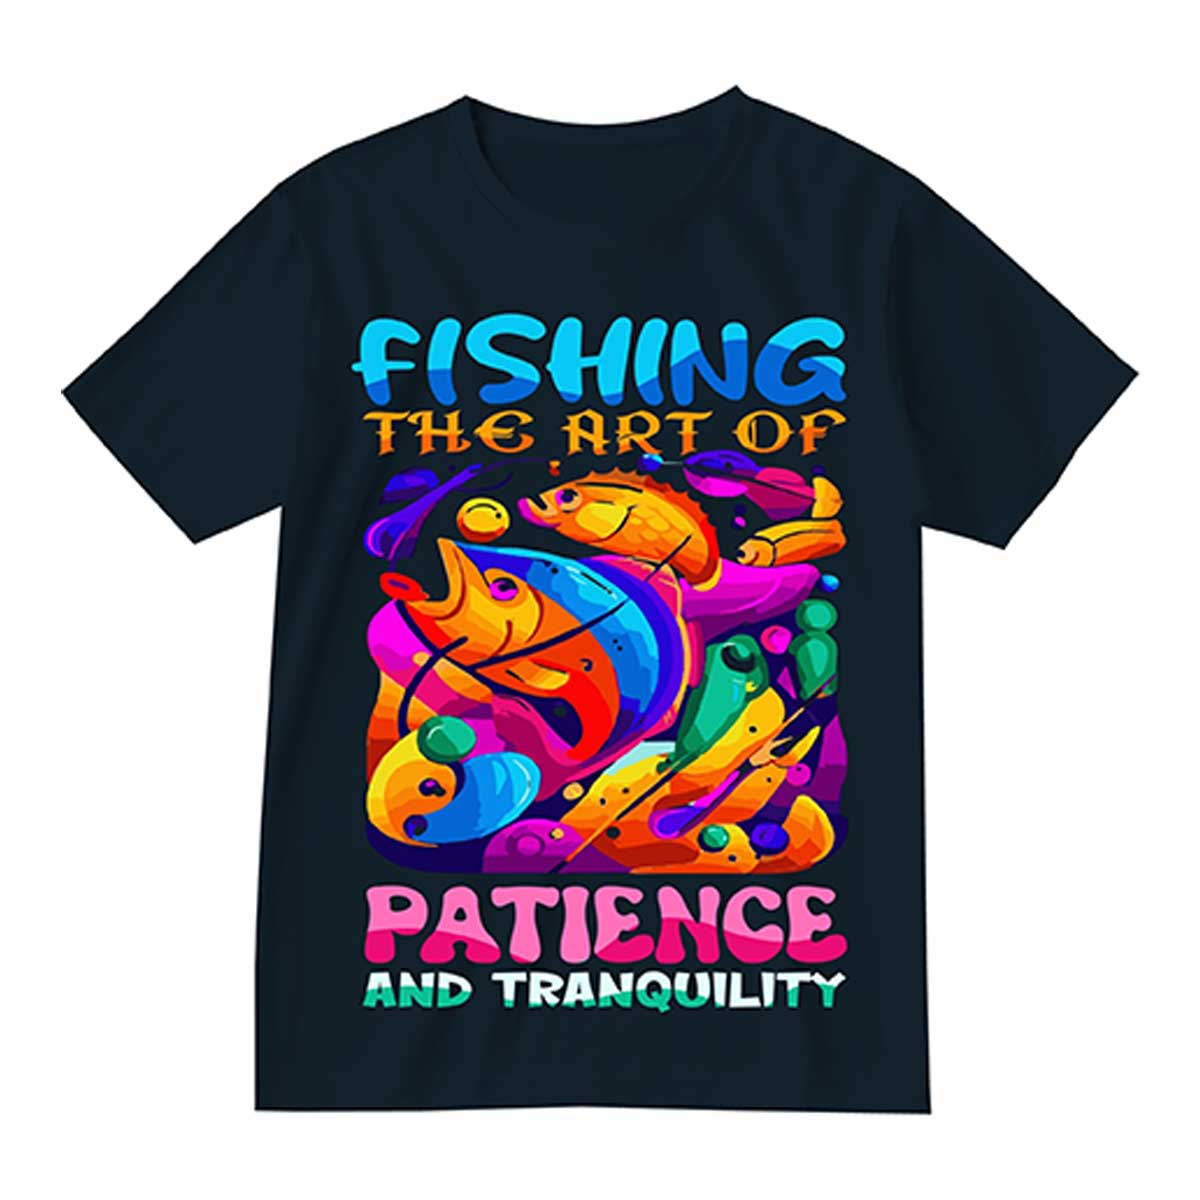 Fishing Shirts Manufacturers in Duisburg